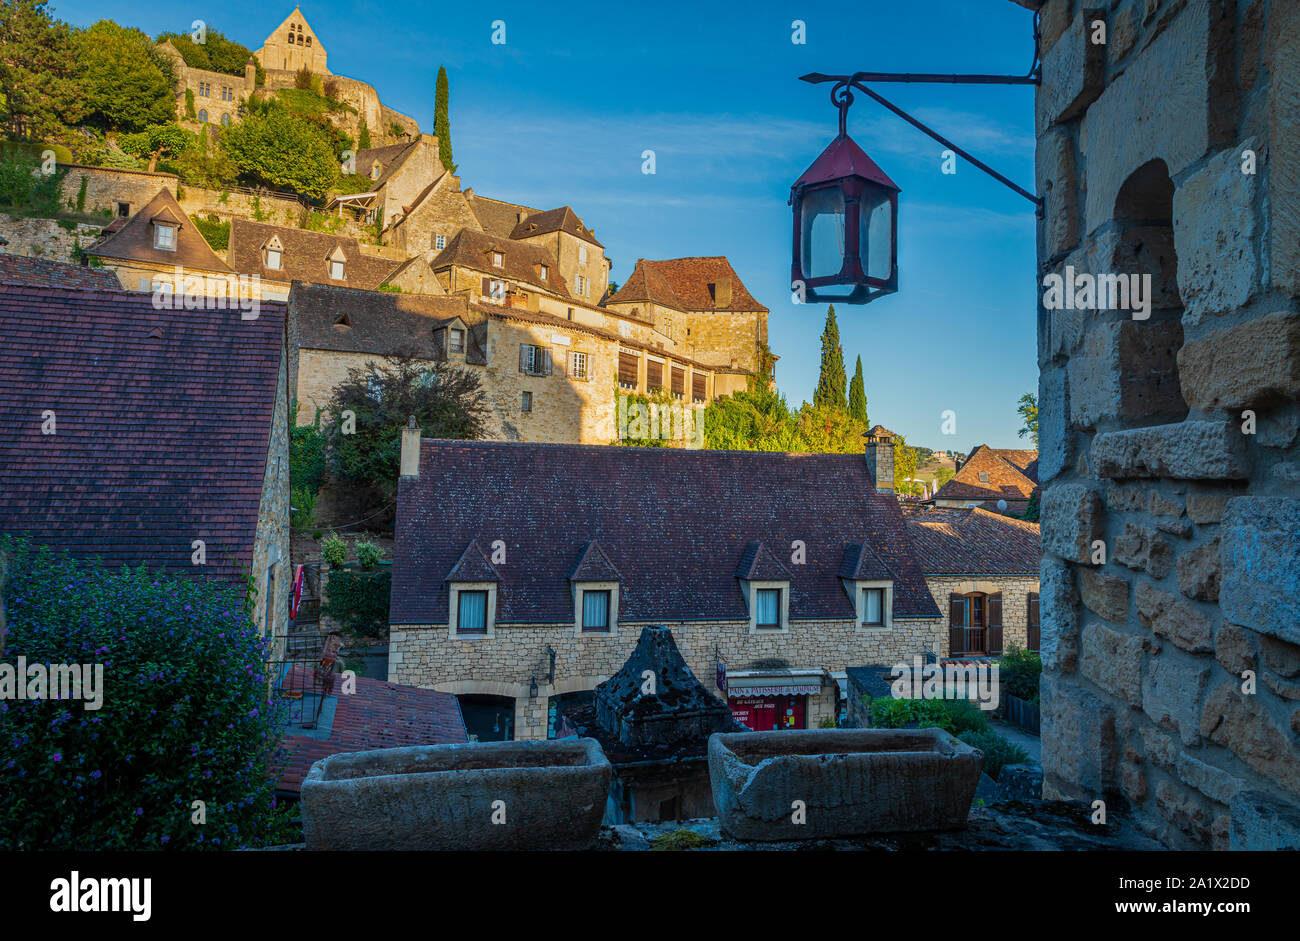 Beynac-et-Cazenac ist ein Dorf im Departement Dordogne im Südwesten Frankreichs. Die mittelalterlichen Château de Beynac befindet sich in der Gemeinde entfernt. Th Stockfoto